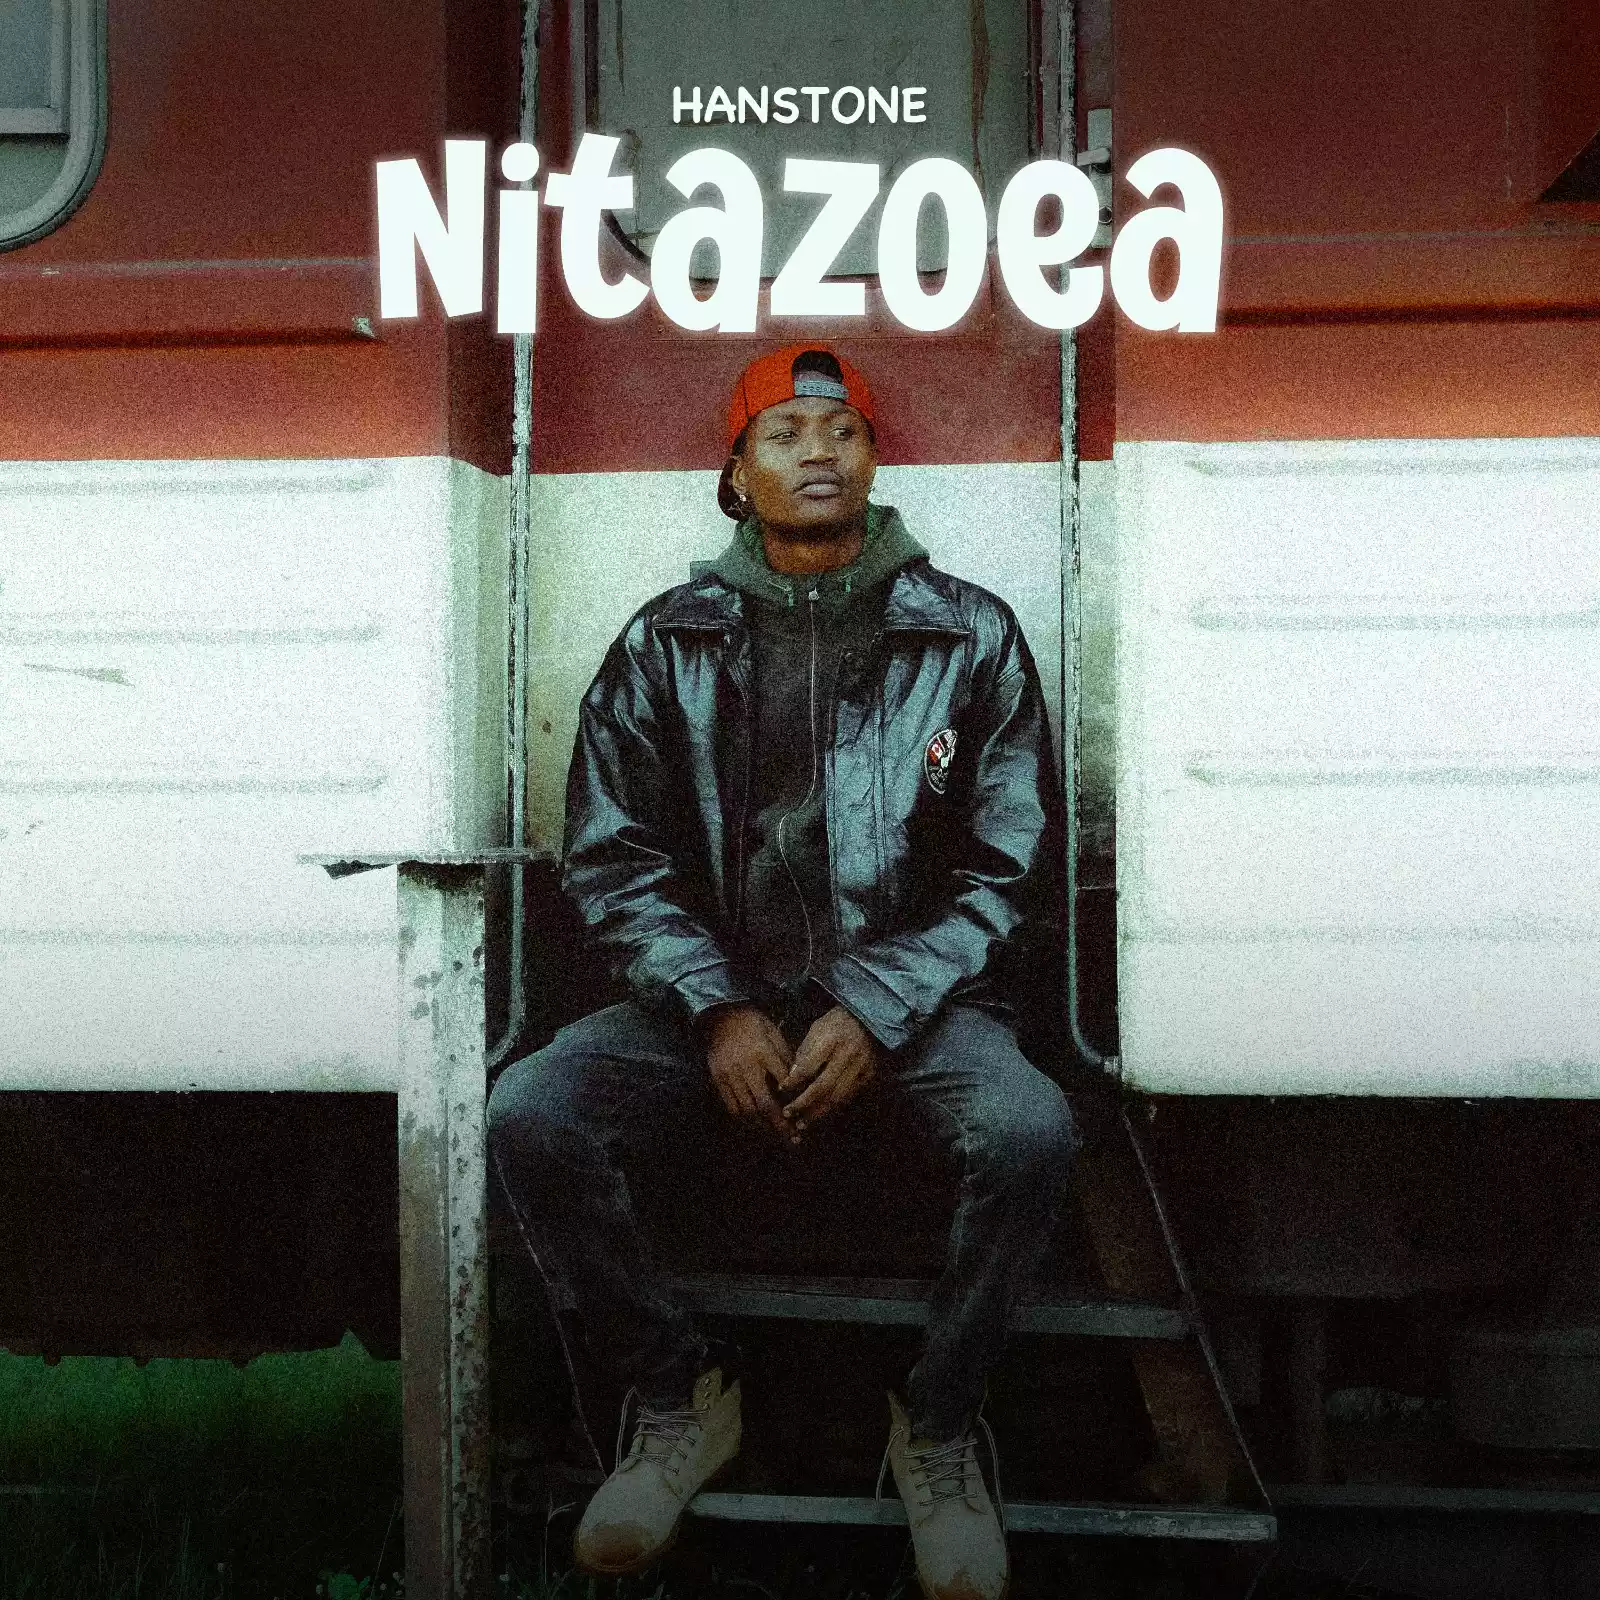 nitazoea